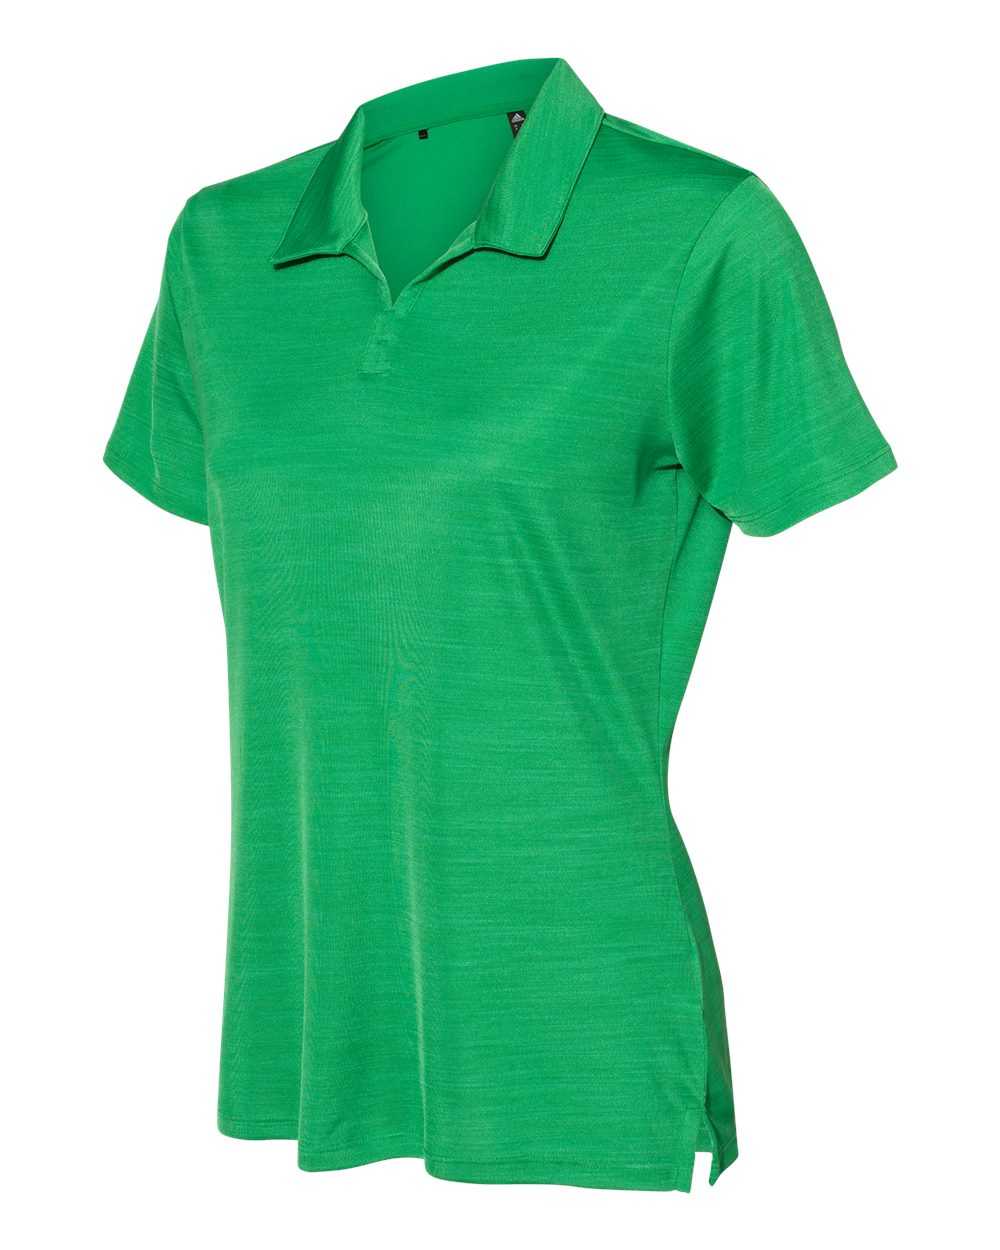 Adidas A403 Women&#39;s M??lange Sport Shirt - Team Green Melange - HIT a Double